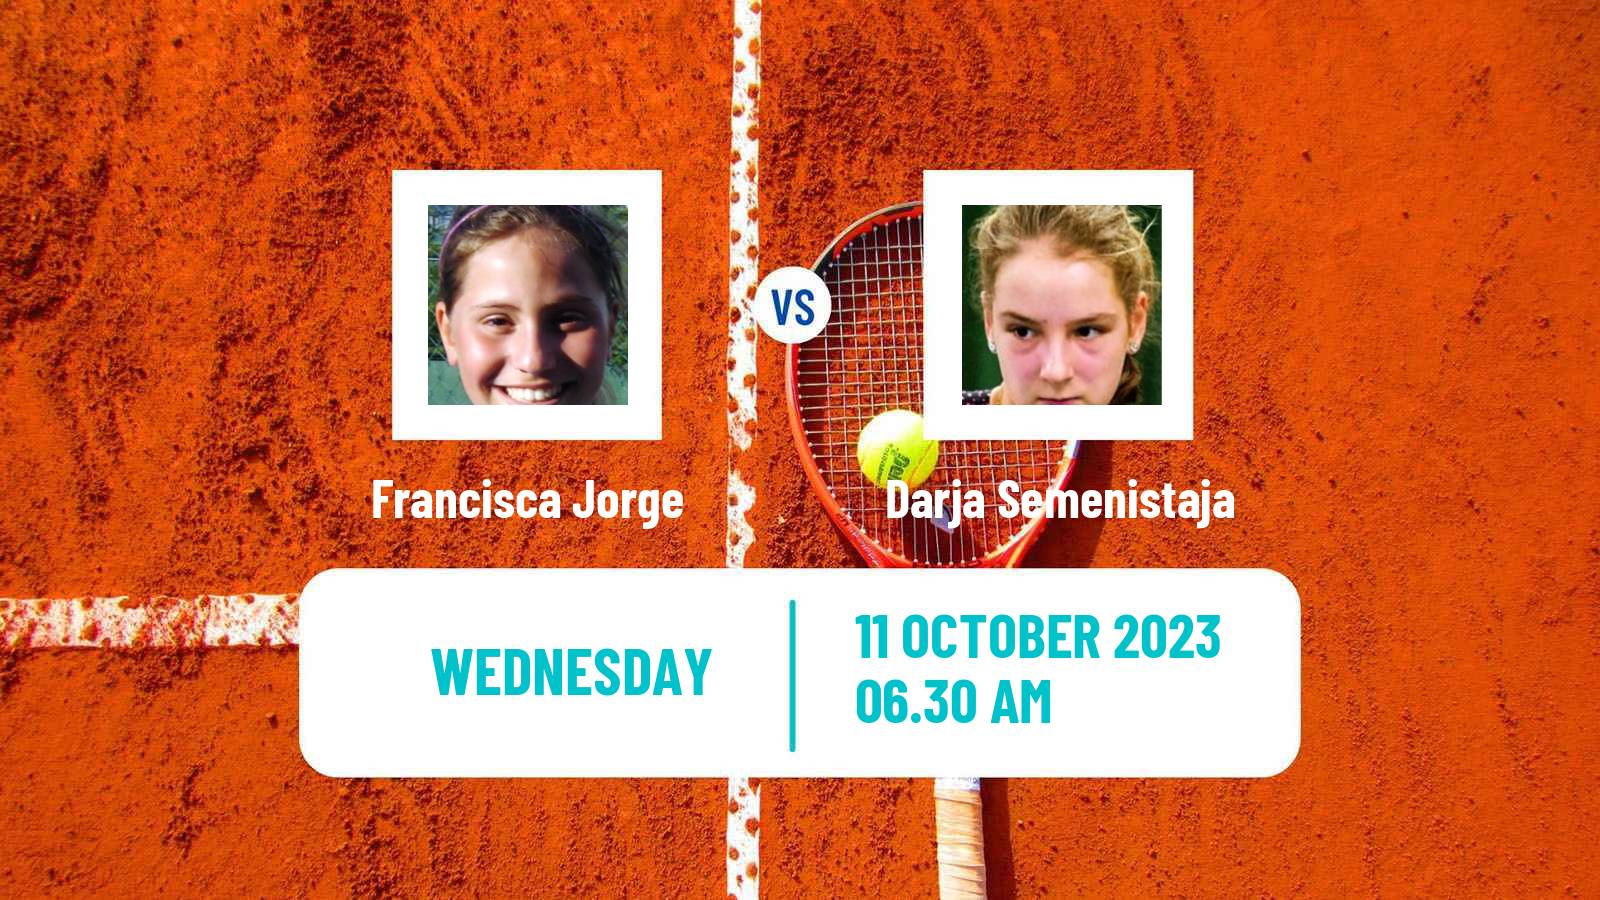 Tennis ITF W40 Quinta Do Lago Women Francisca Jorge - Darja Semenistaja